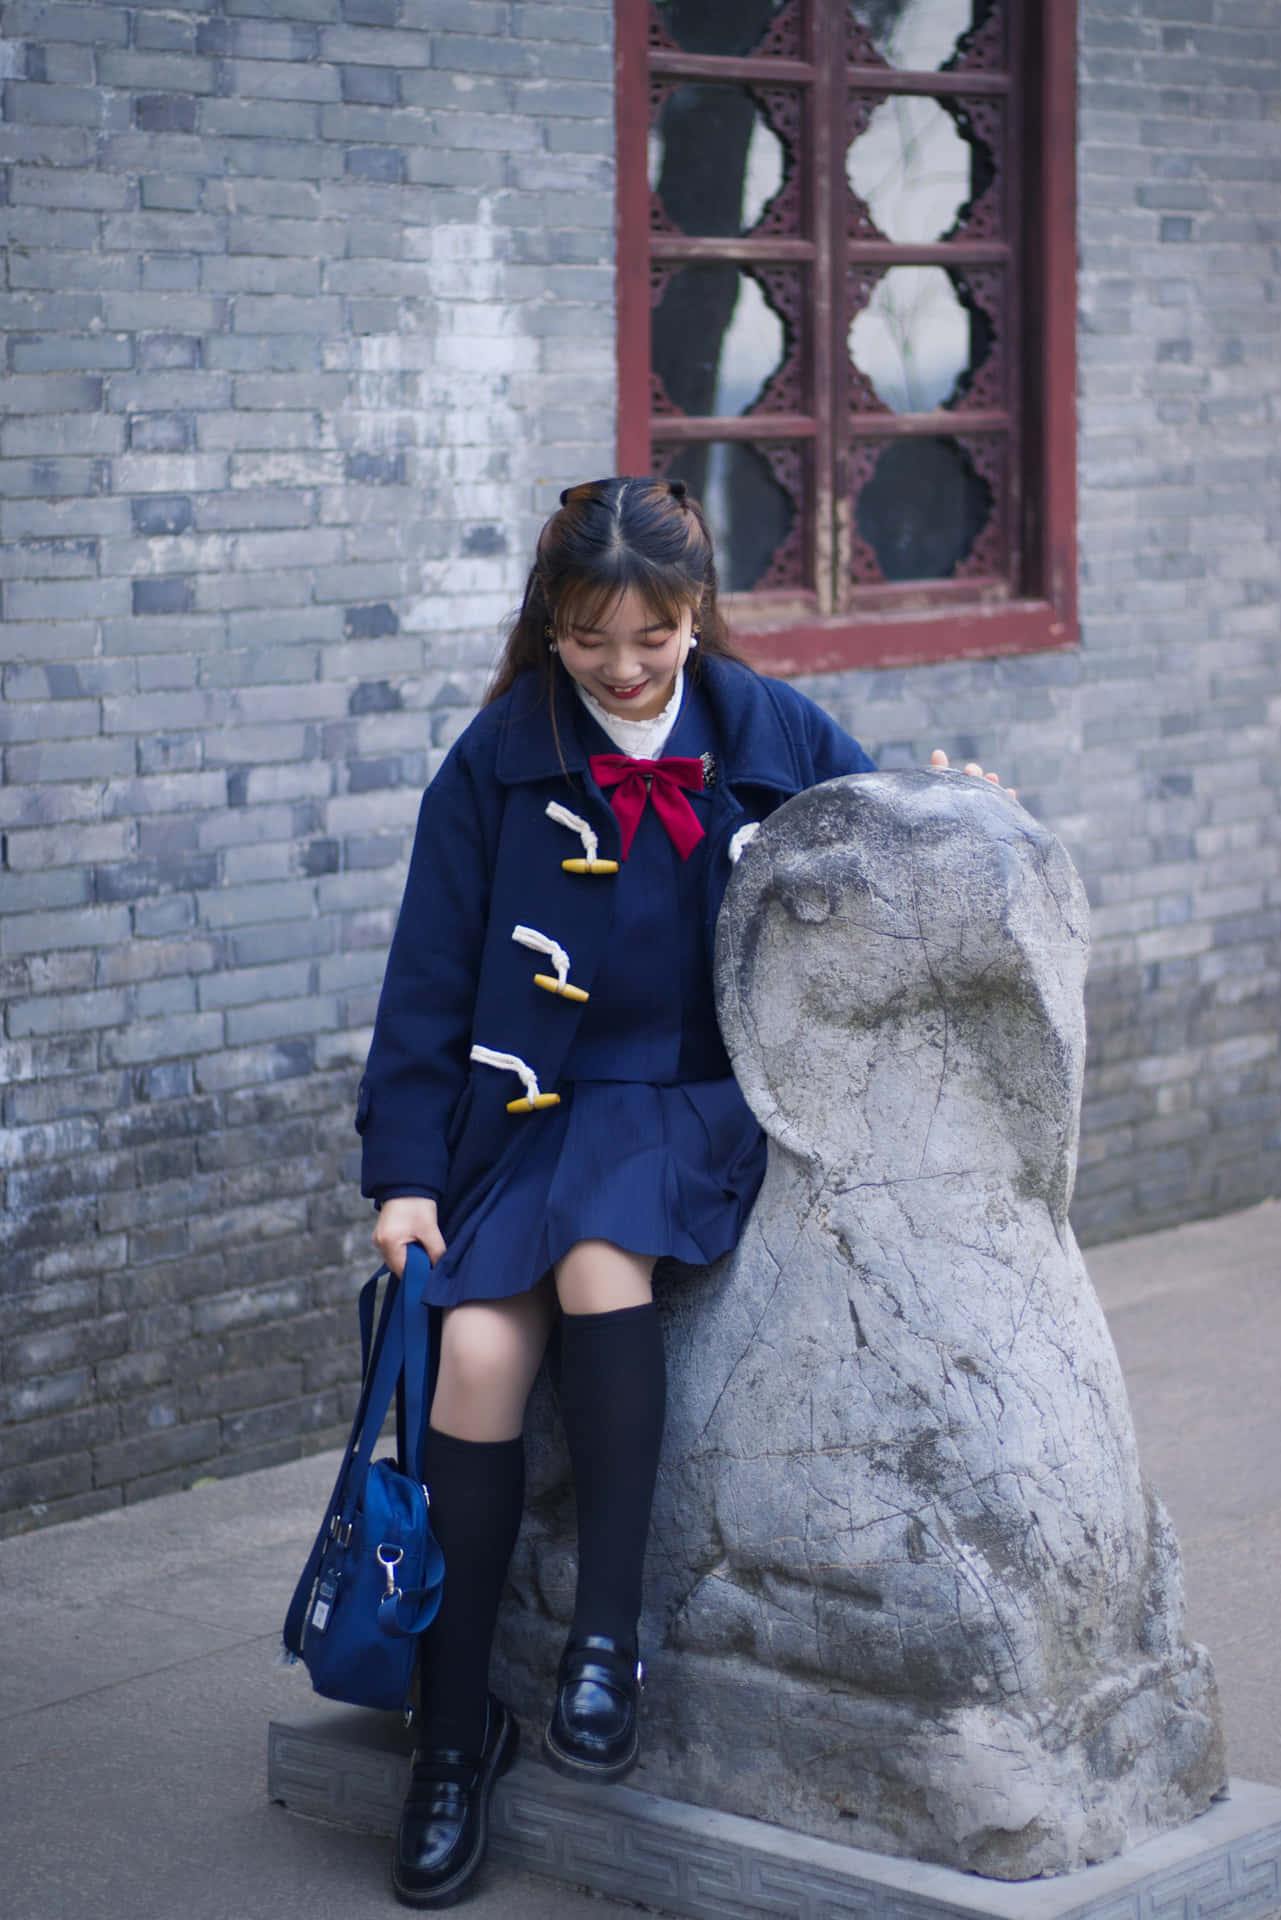 Schoolgirl Smiling Beside Stone Sculpture.jpg Wallpaper